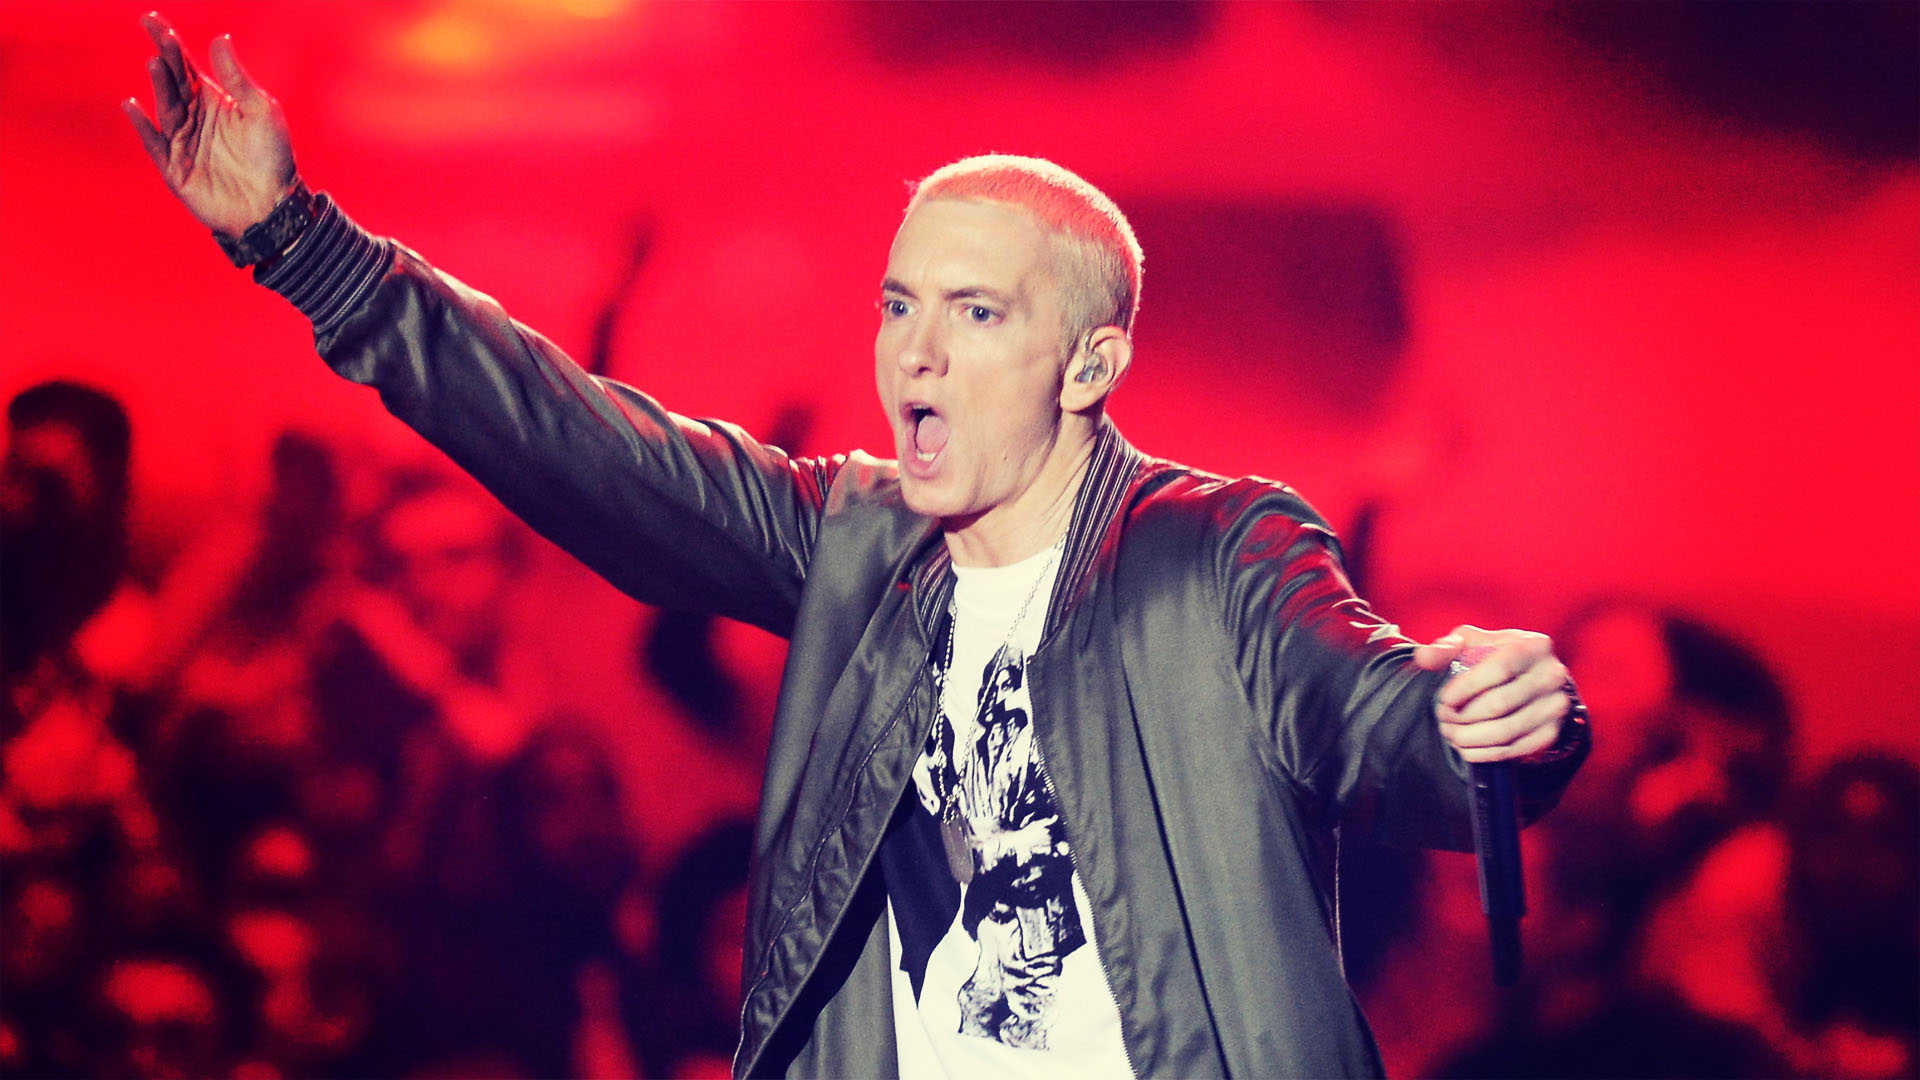 1920x1080 Eminem-live-in-concert-backgrounds